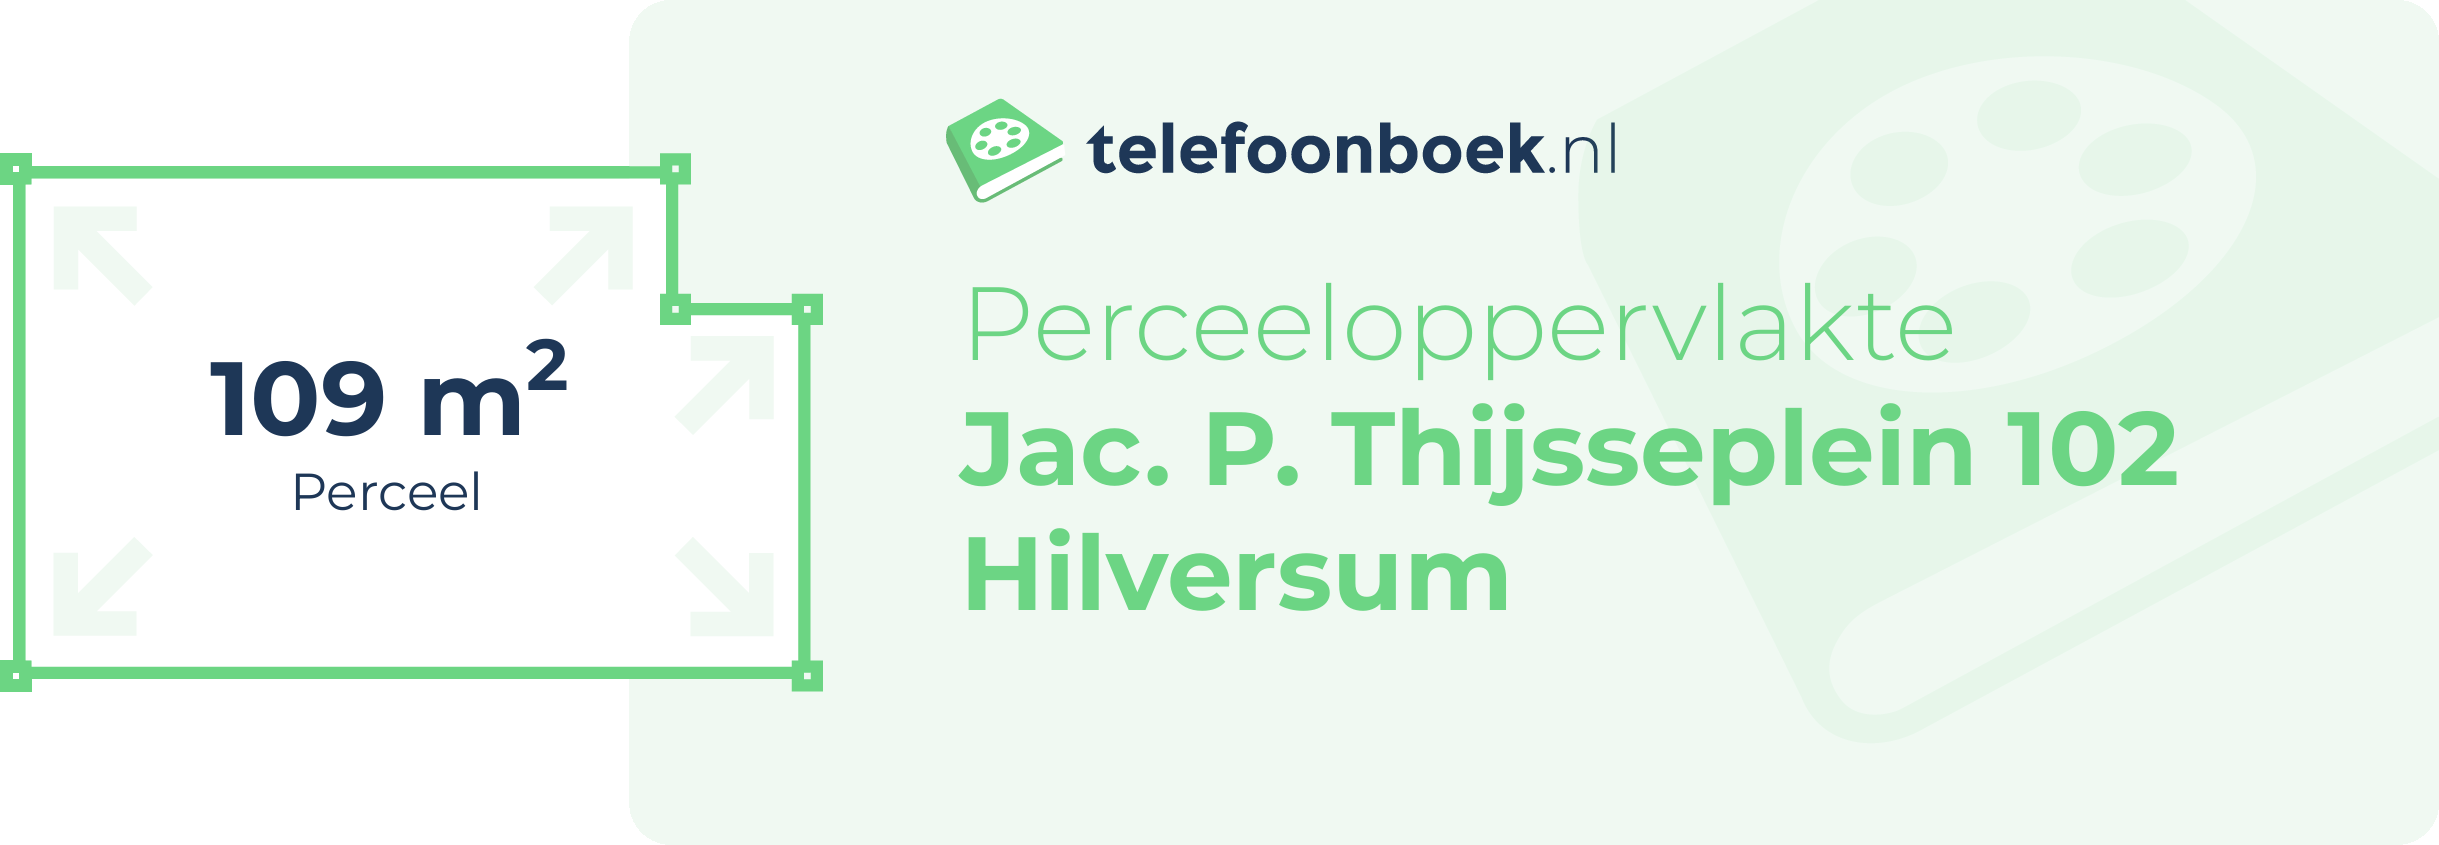 Perceeloppervlakte Jac. P. Thijsseplein 102 Hilversum